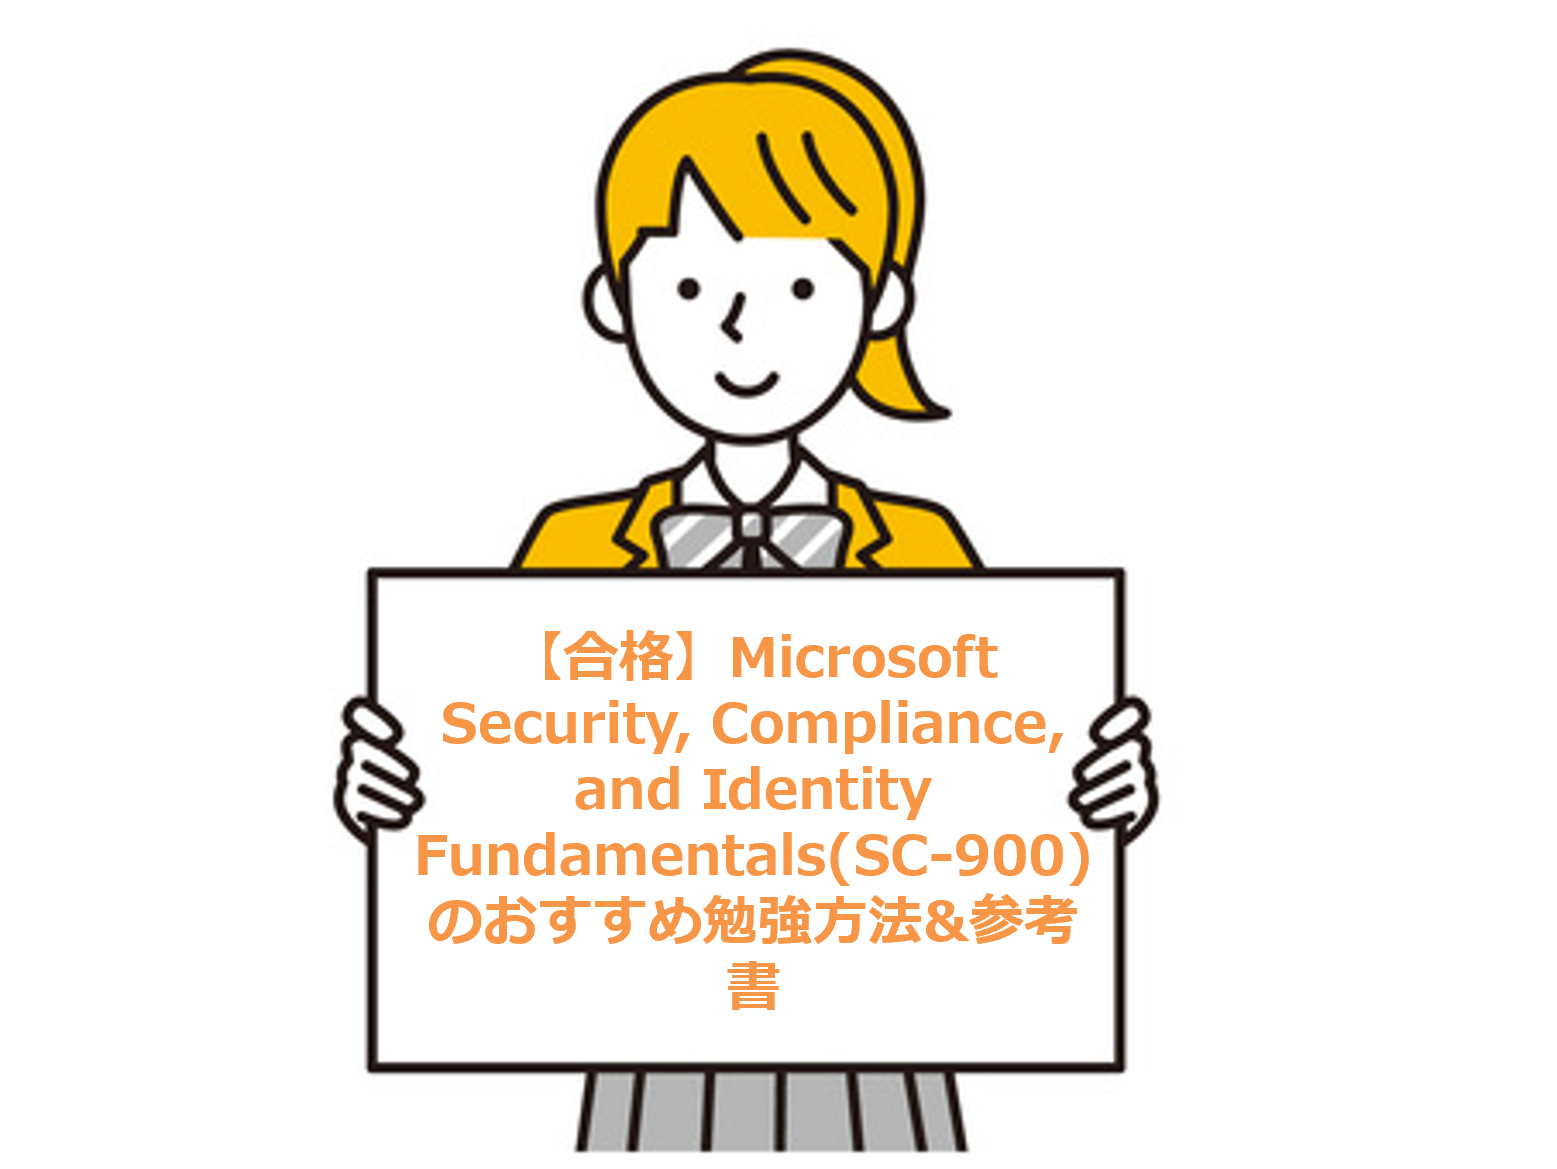 【合格】Microsoft Security, Compliance, and Identity Fundamentals(SC-900)のおすすめ勉強方法&参考書